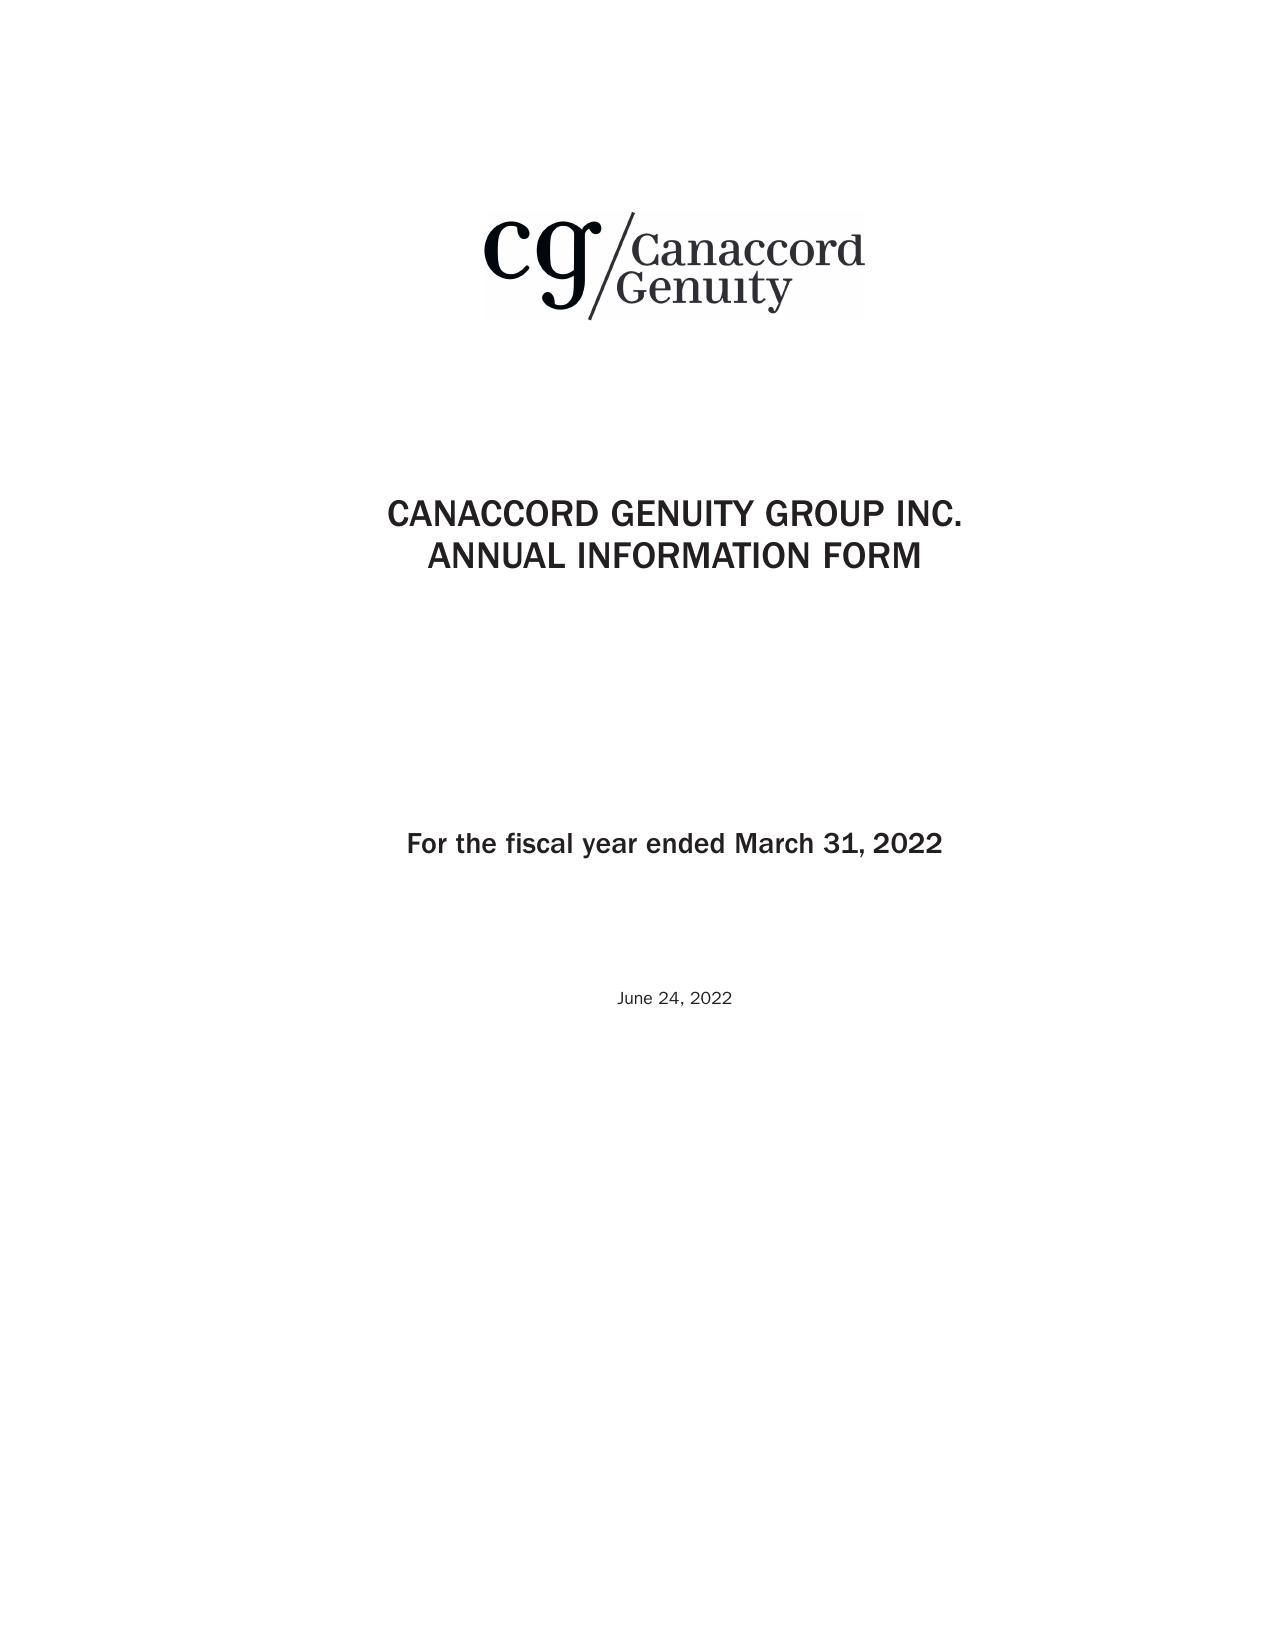 CANACCORDGENUITY 2022 Annual Report